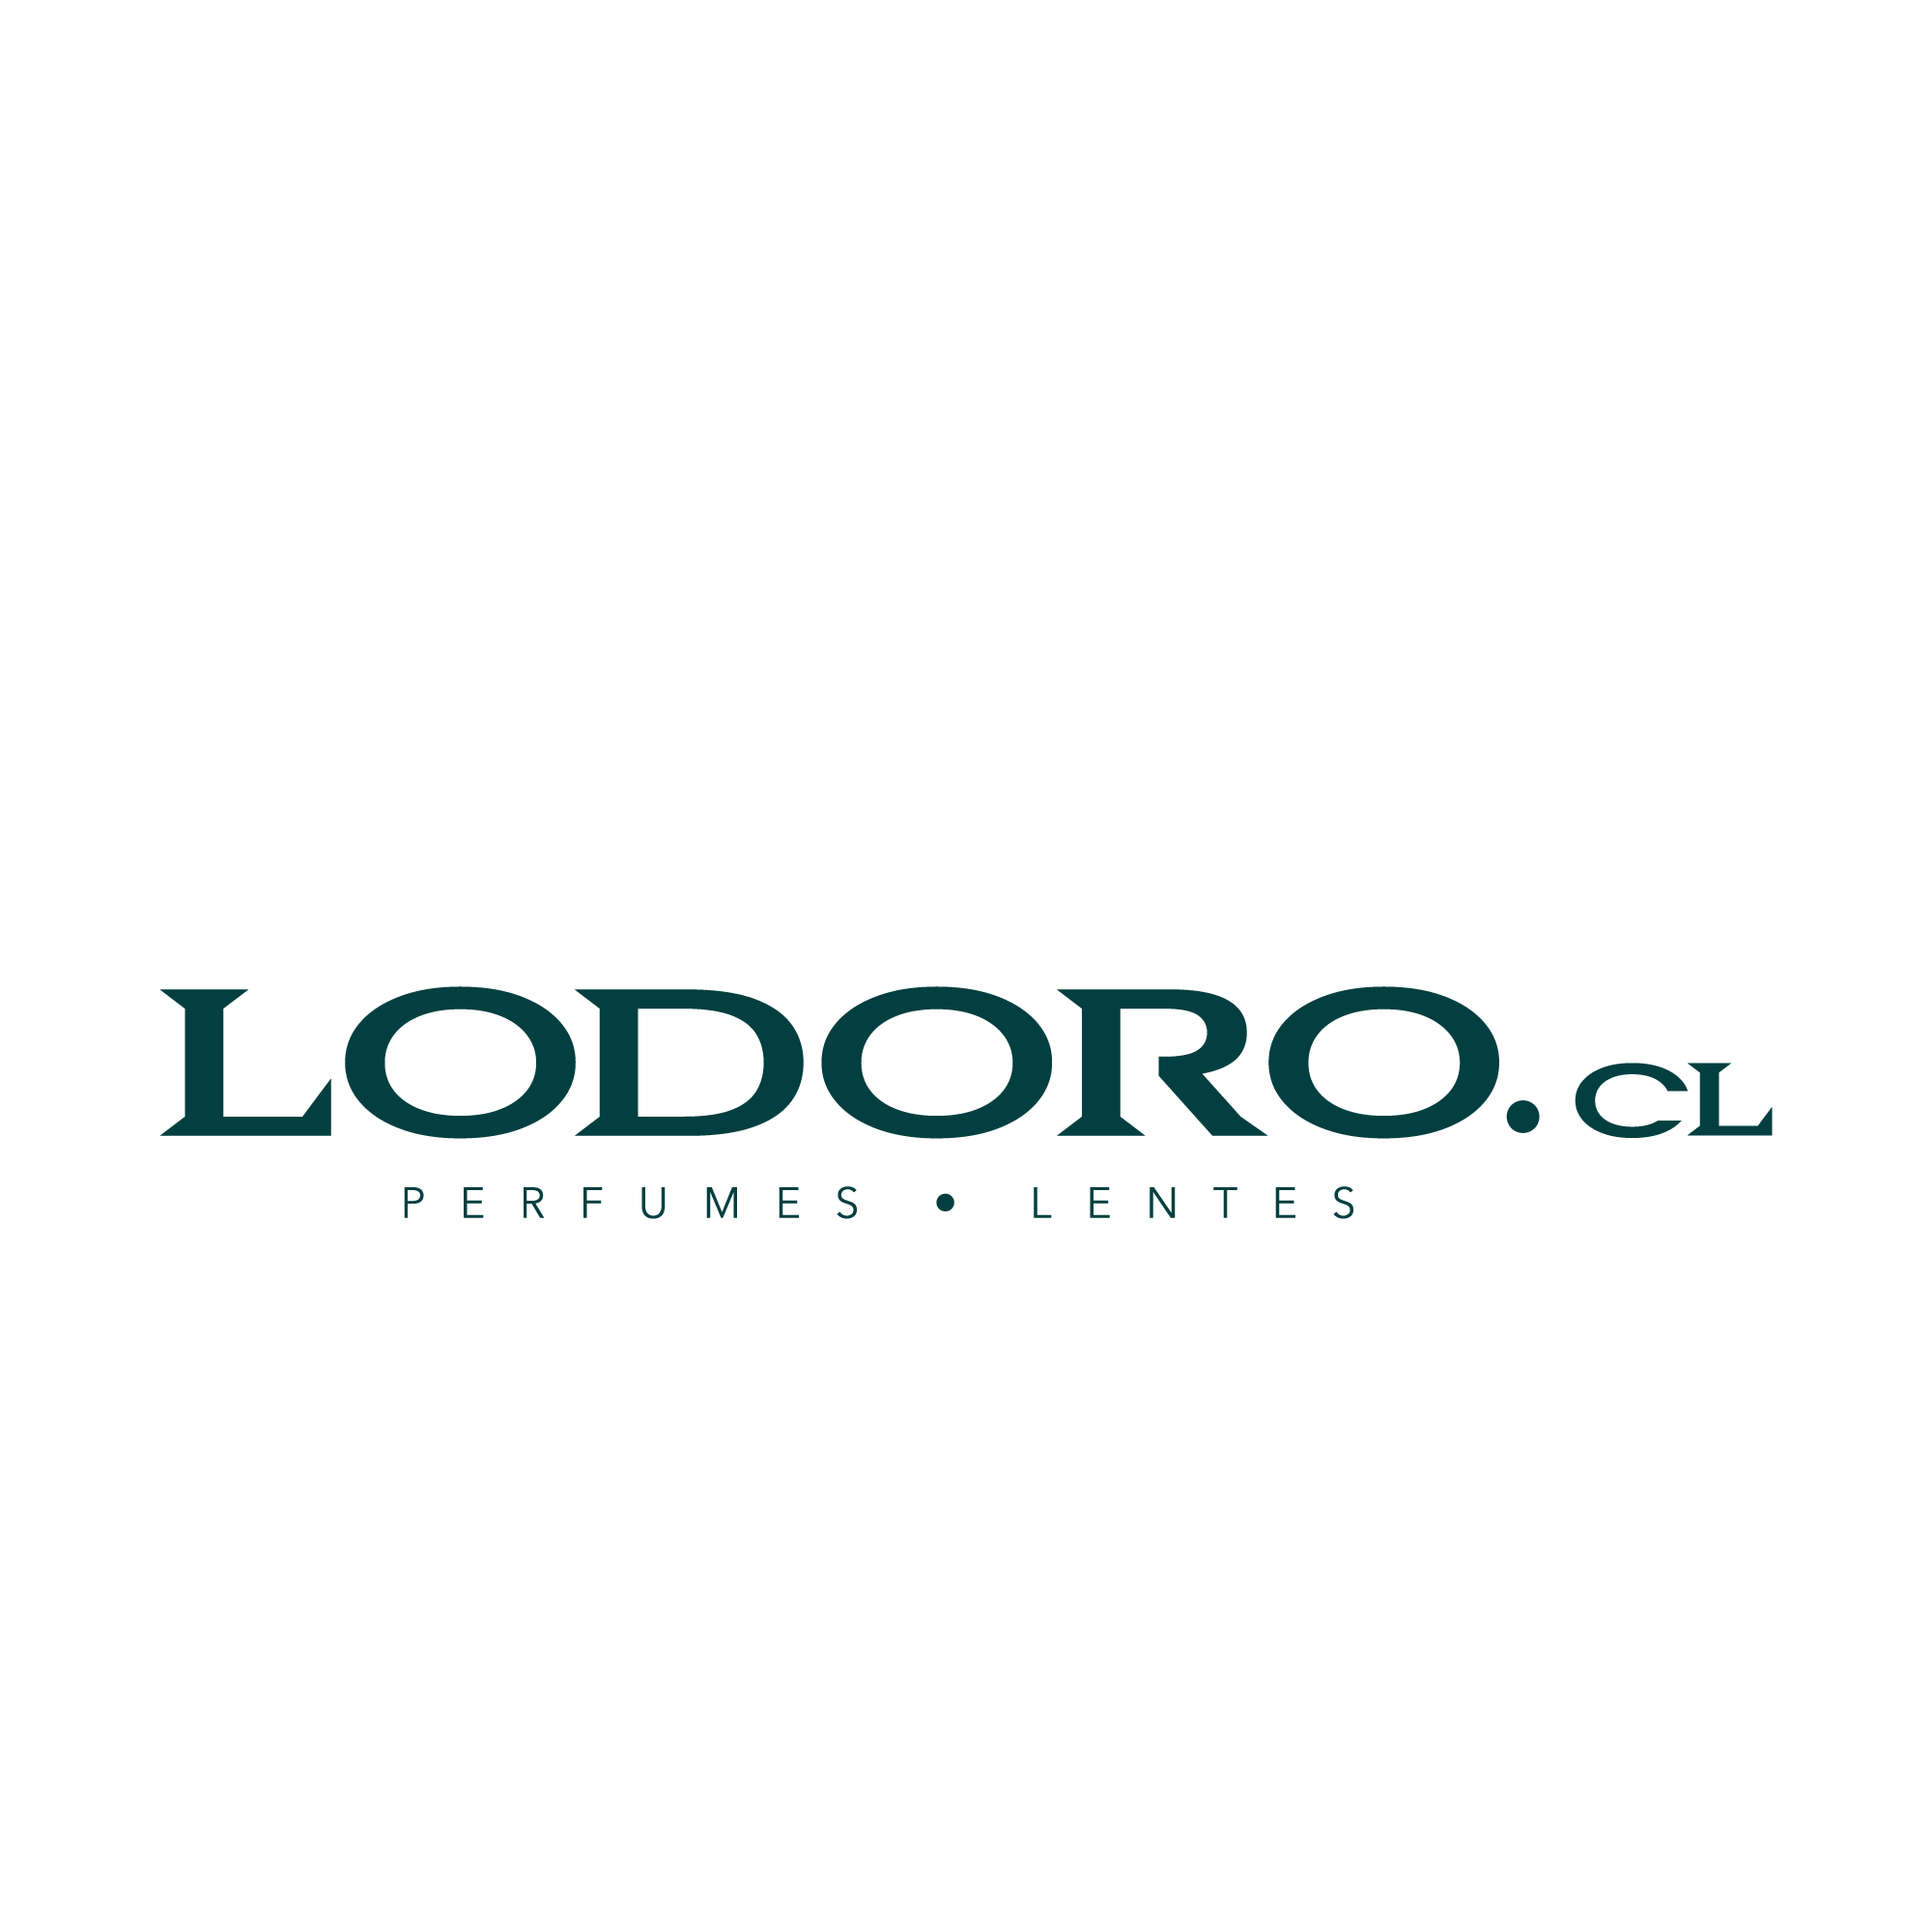 www.lodoro.cl